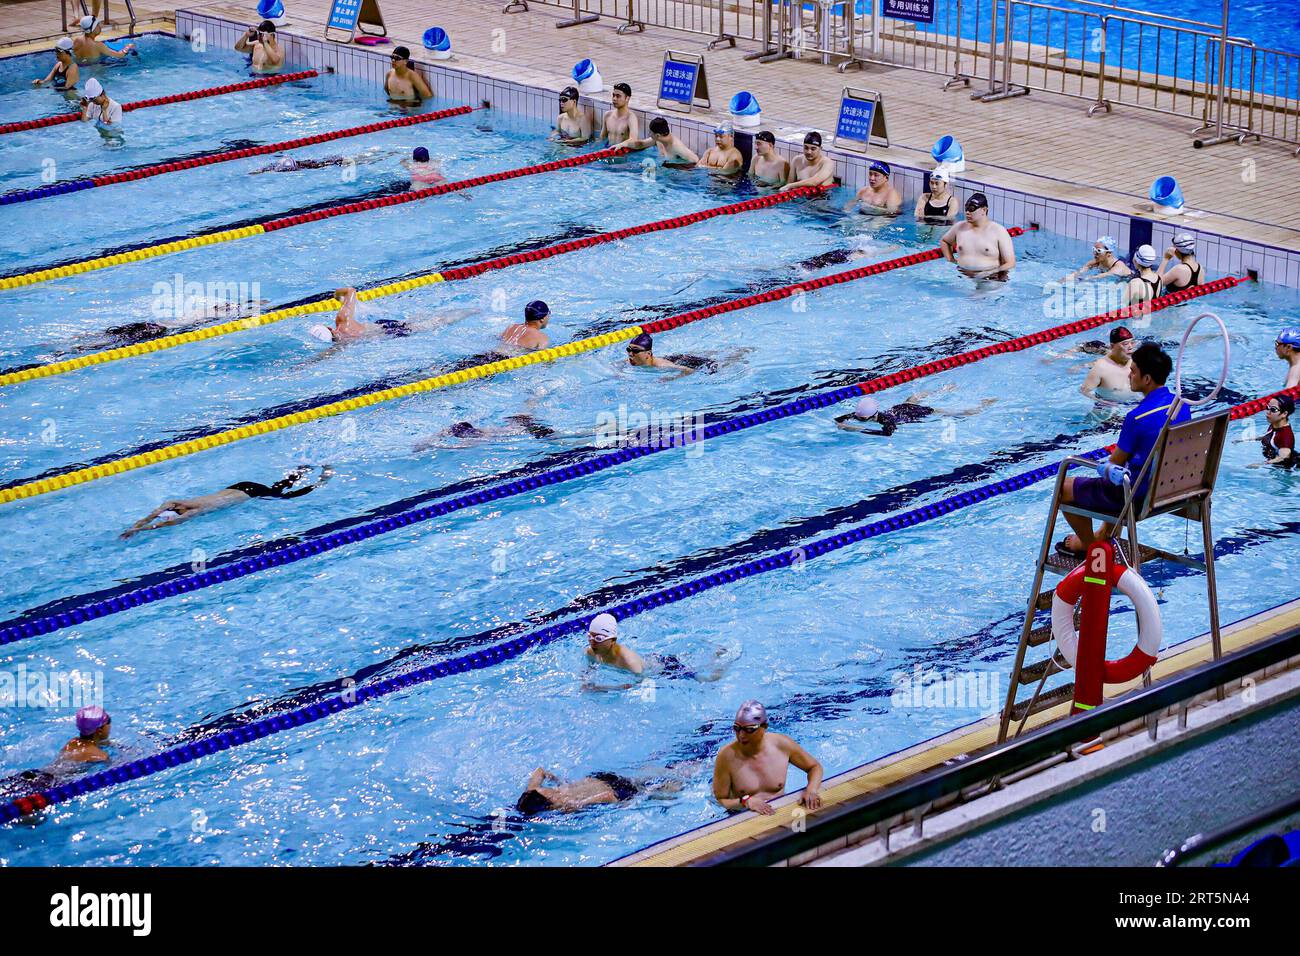 230908 -- PECHINO, 8 settembre 2023 -- i cittadini nuotano al Tianhe Natatorium, che è stato il luogo sportivo per la pallanuoto ai Giochi asiatici di Guangzhou 2010 a Guangzhou, nella provincia del Guangdong della Cina meridionale, 21 agosto 2023. Hangzhou diventerà la terza città cinese ad ospitare i Giochi asiatici dopo Pechino nel 1990 e Guangzhou nel 2010. Alcuni impianti sportivi utilizzati o costruiti per i Giochi asiatici di Pechino e Guangzhou sono già stati aperti al pubblico dopo il completamento, il che gioca un ruolo importante nella promozione del fitness di massa e nell'attrarre più persone ad entrare nello sport. Foto di /Xinhua SPCHINA-ASIAN GAMES-VENUES-ma Foto Stock